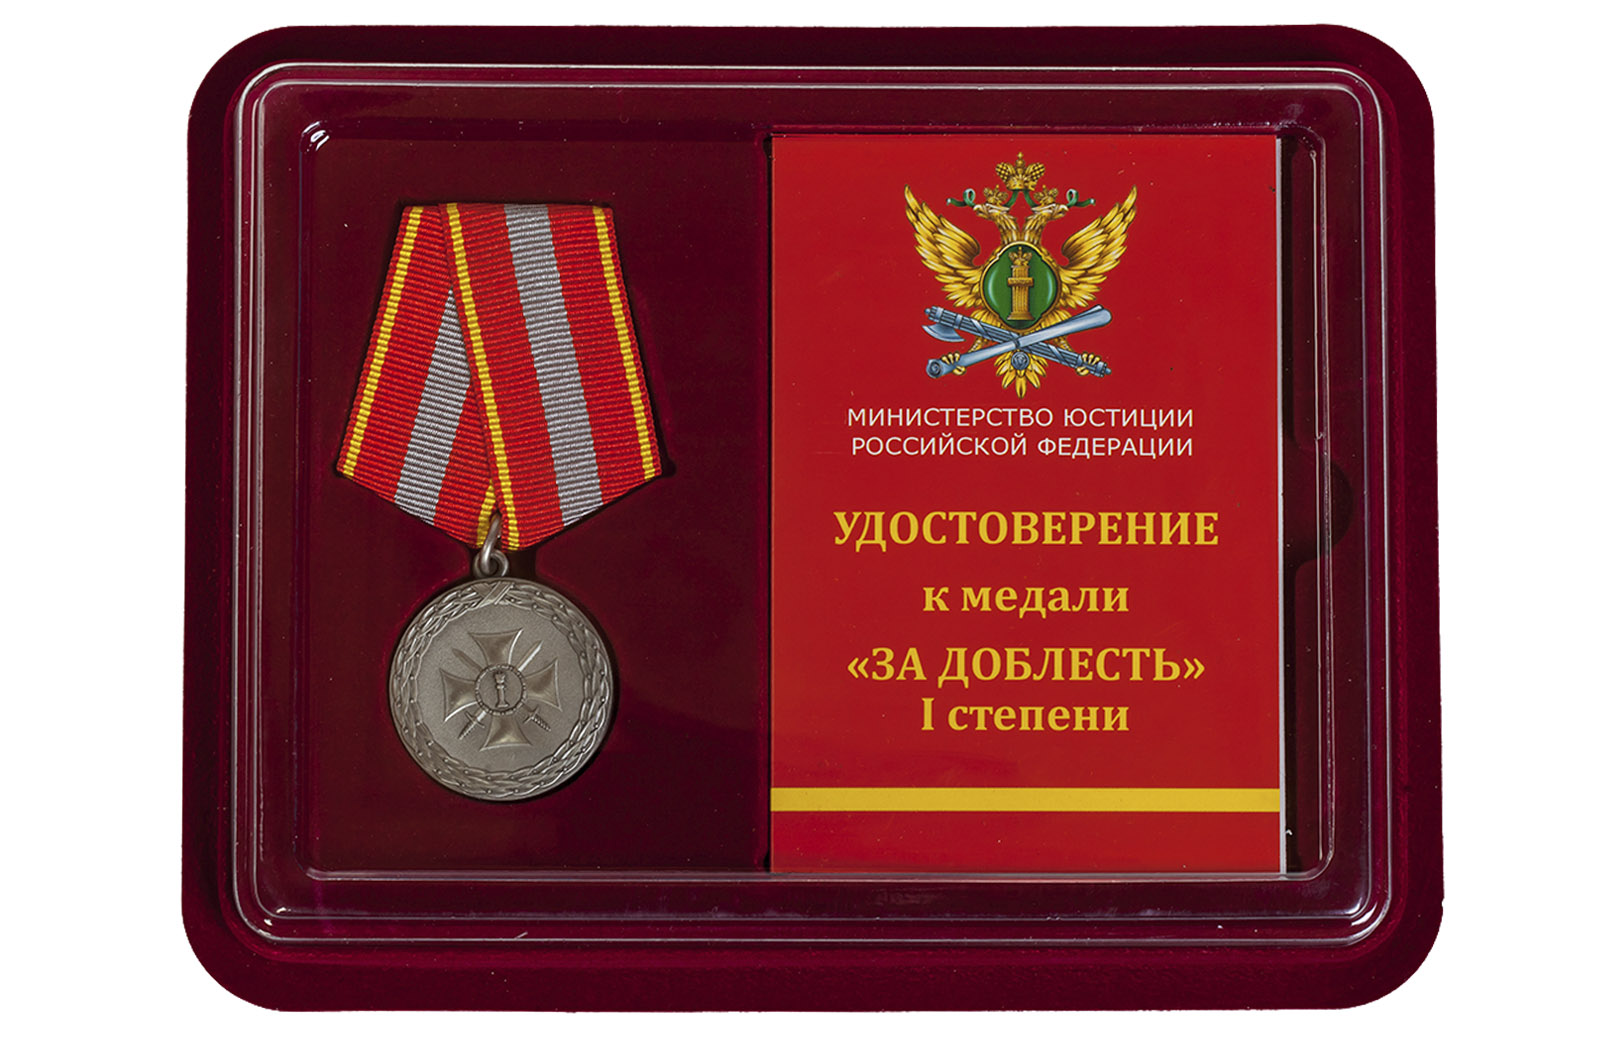 Купить медаль Министерства Юстиции РФ За доблесть 1 степени в подарок